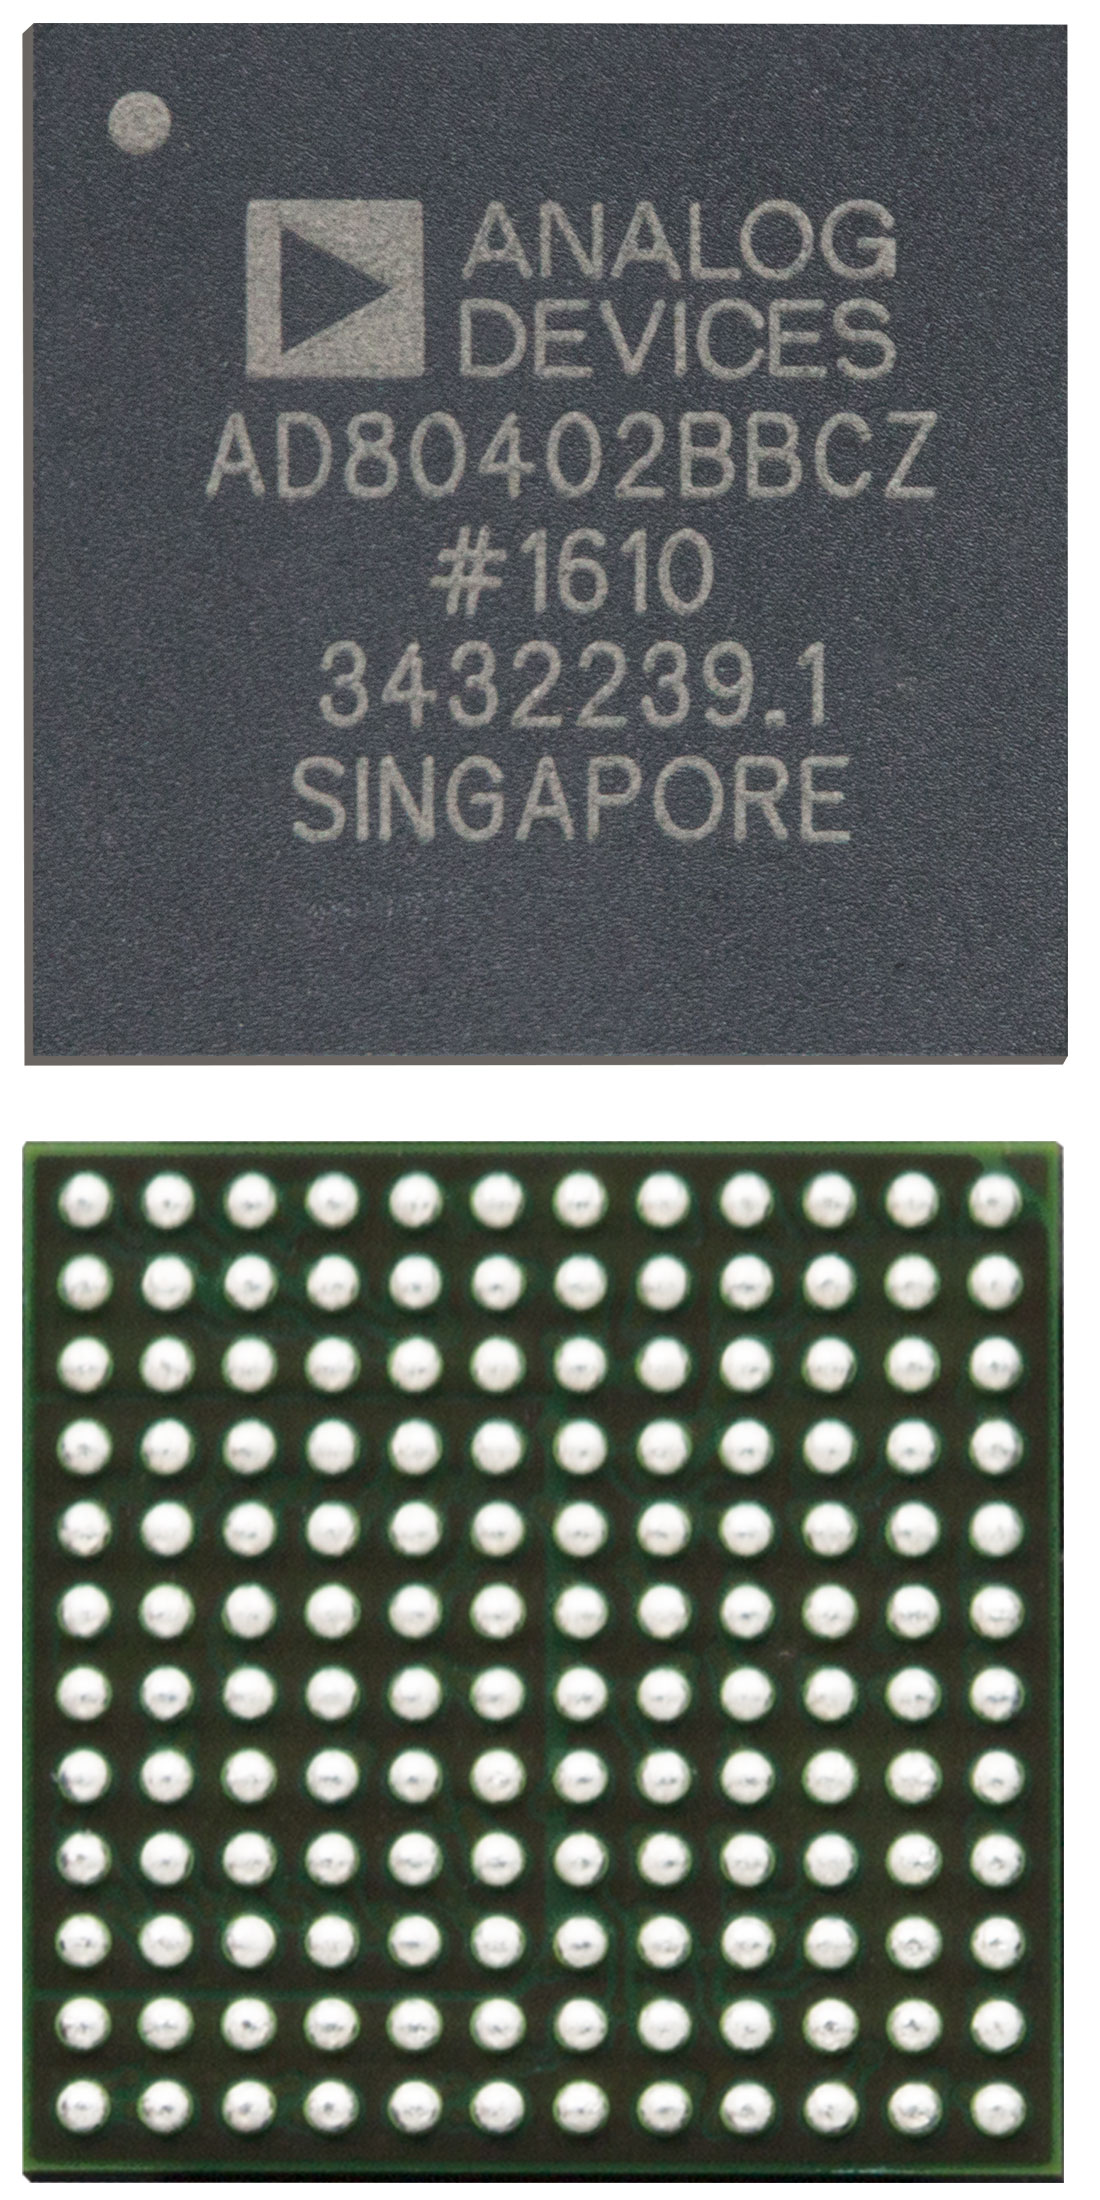 AD80402价格，AD80403BBCZ，无人机应用， RF捷变收发器，ADI双通道RF捷变收发器,ADI ，2.4GHz至-2.5GHz和 4.9GHz至-6GHz，大疆无人机捷变收发器IC芯片